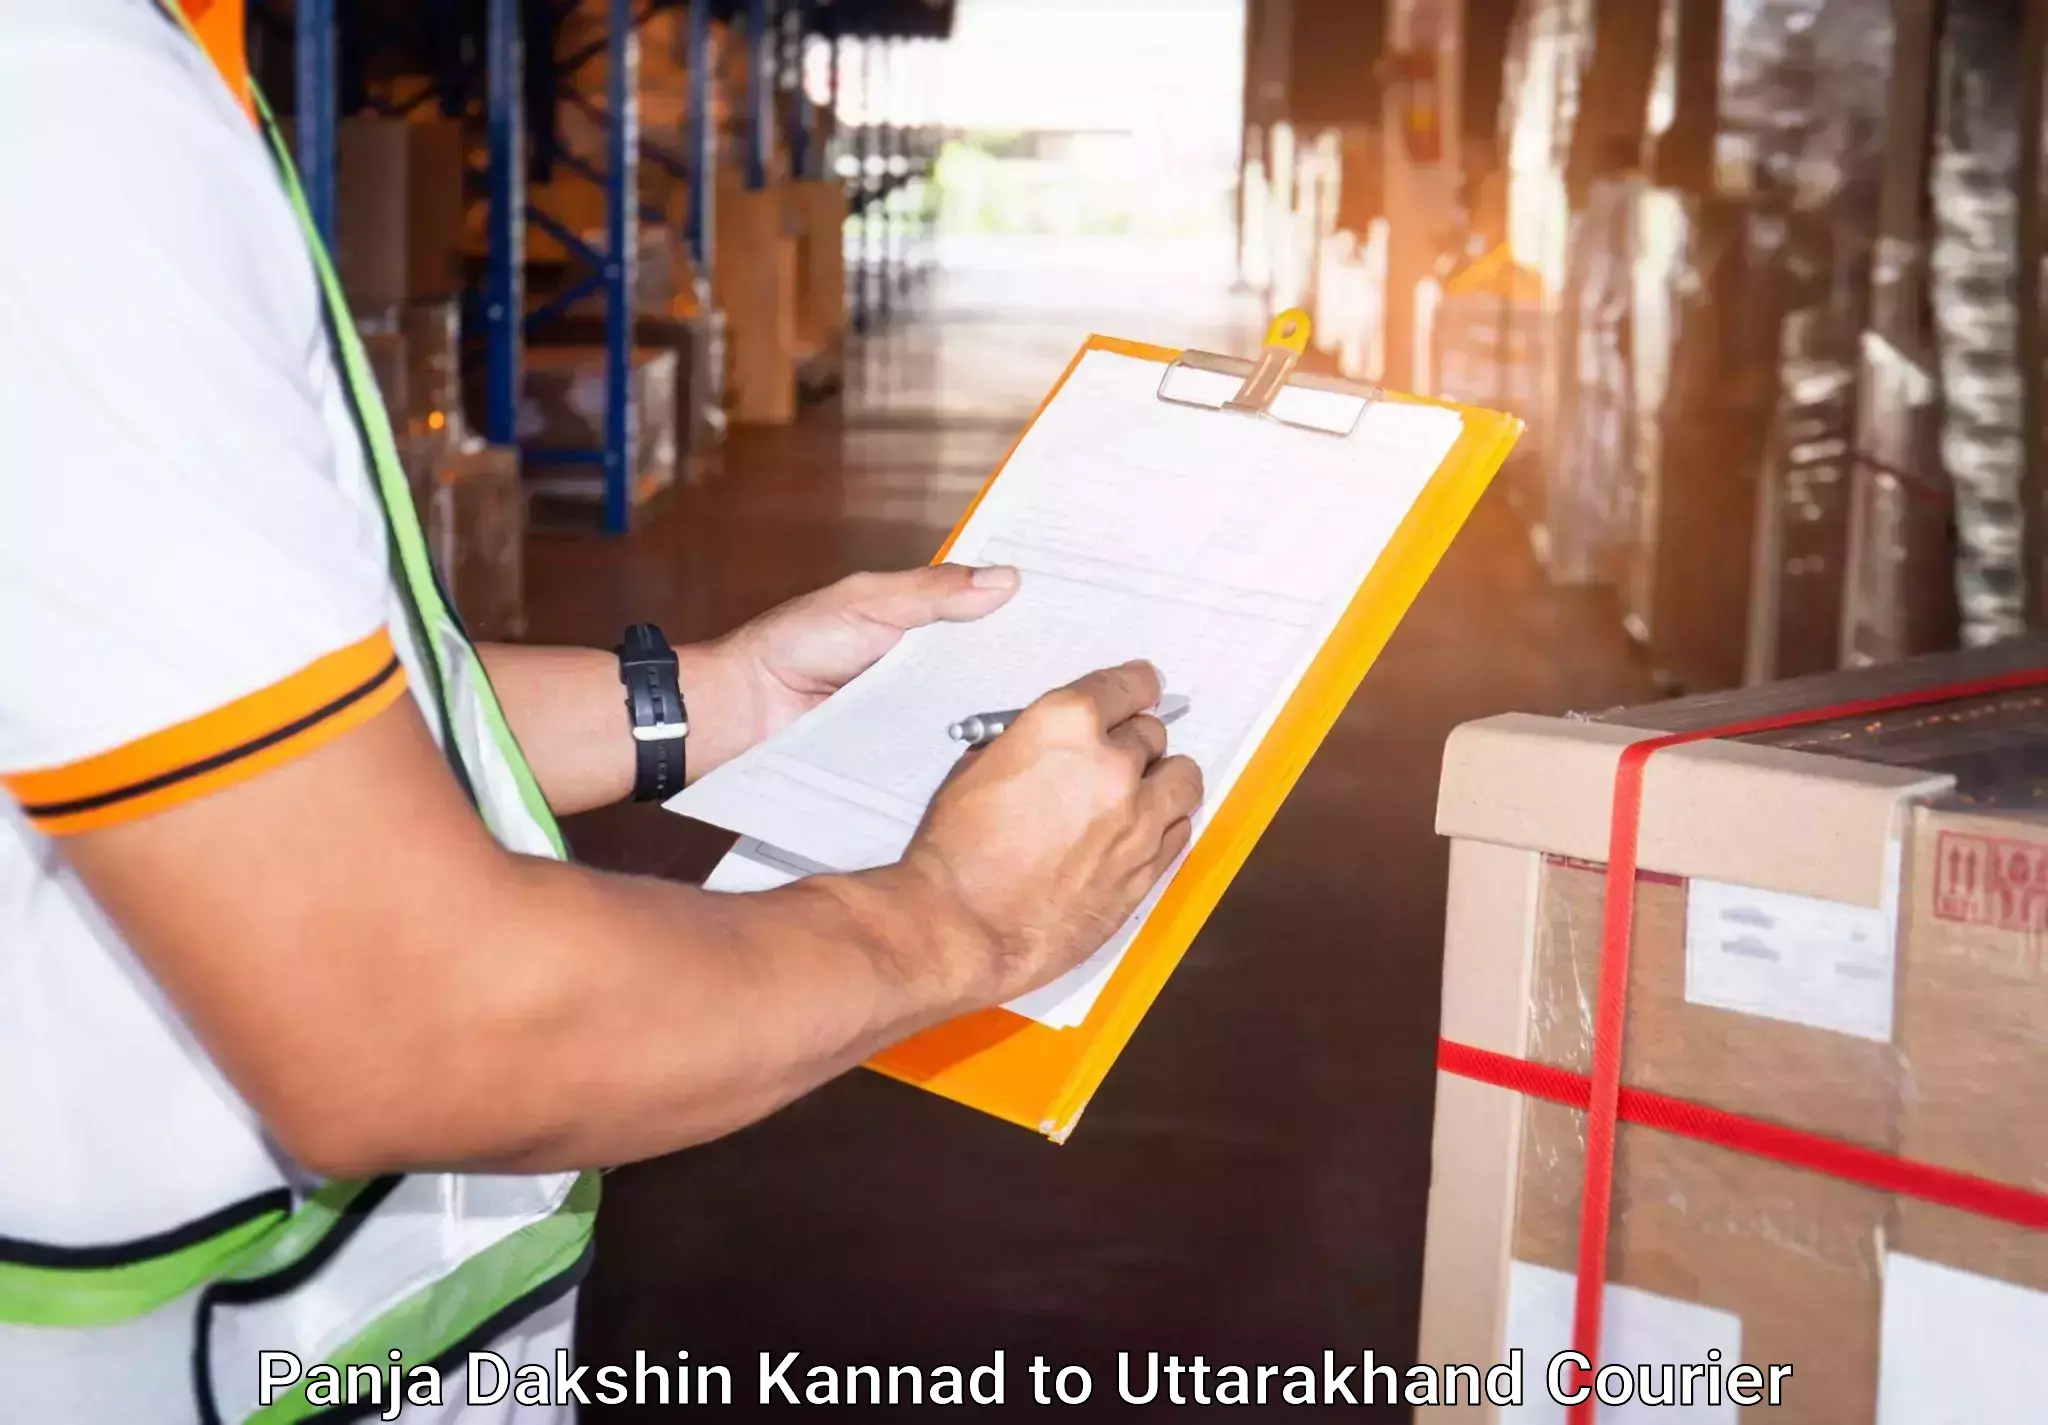 Door-to-door baggage service Panja Dakshin Kannad to IIT Roorkee